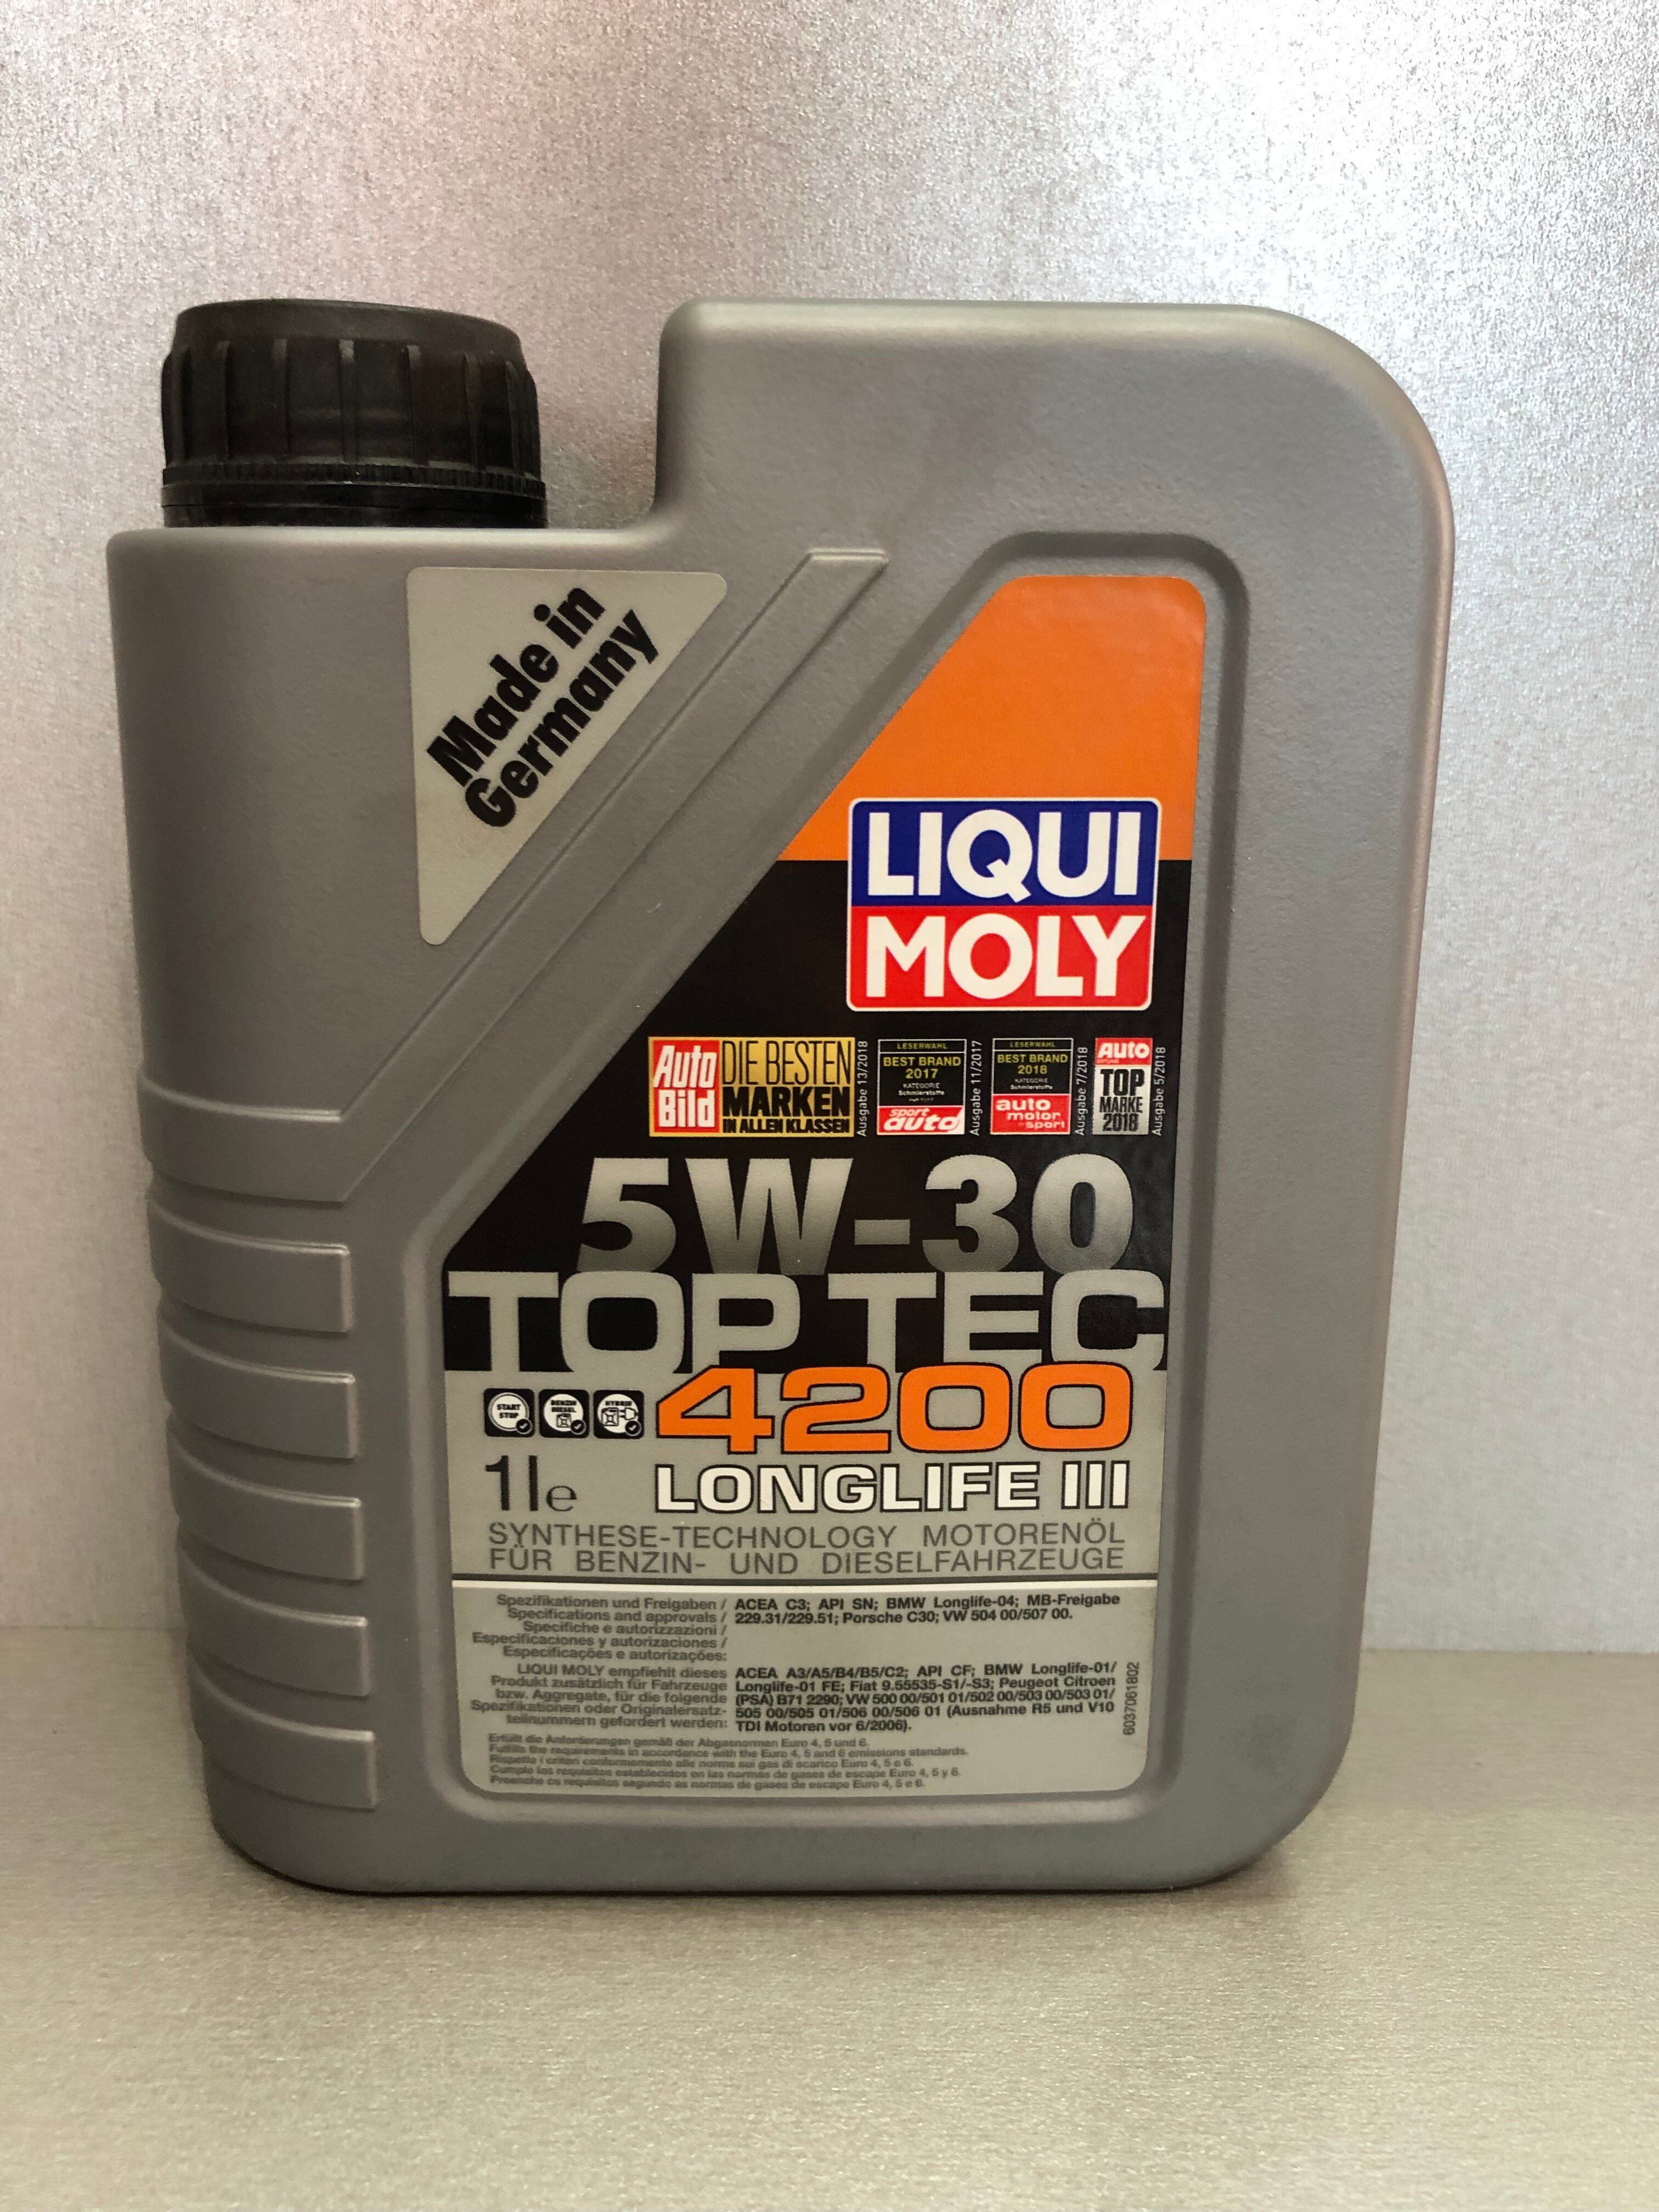   Liqui Moly Top Tec 4200 5W-30 1 . API SN